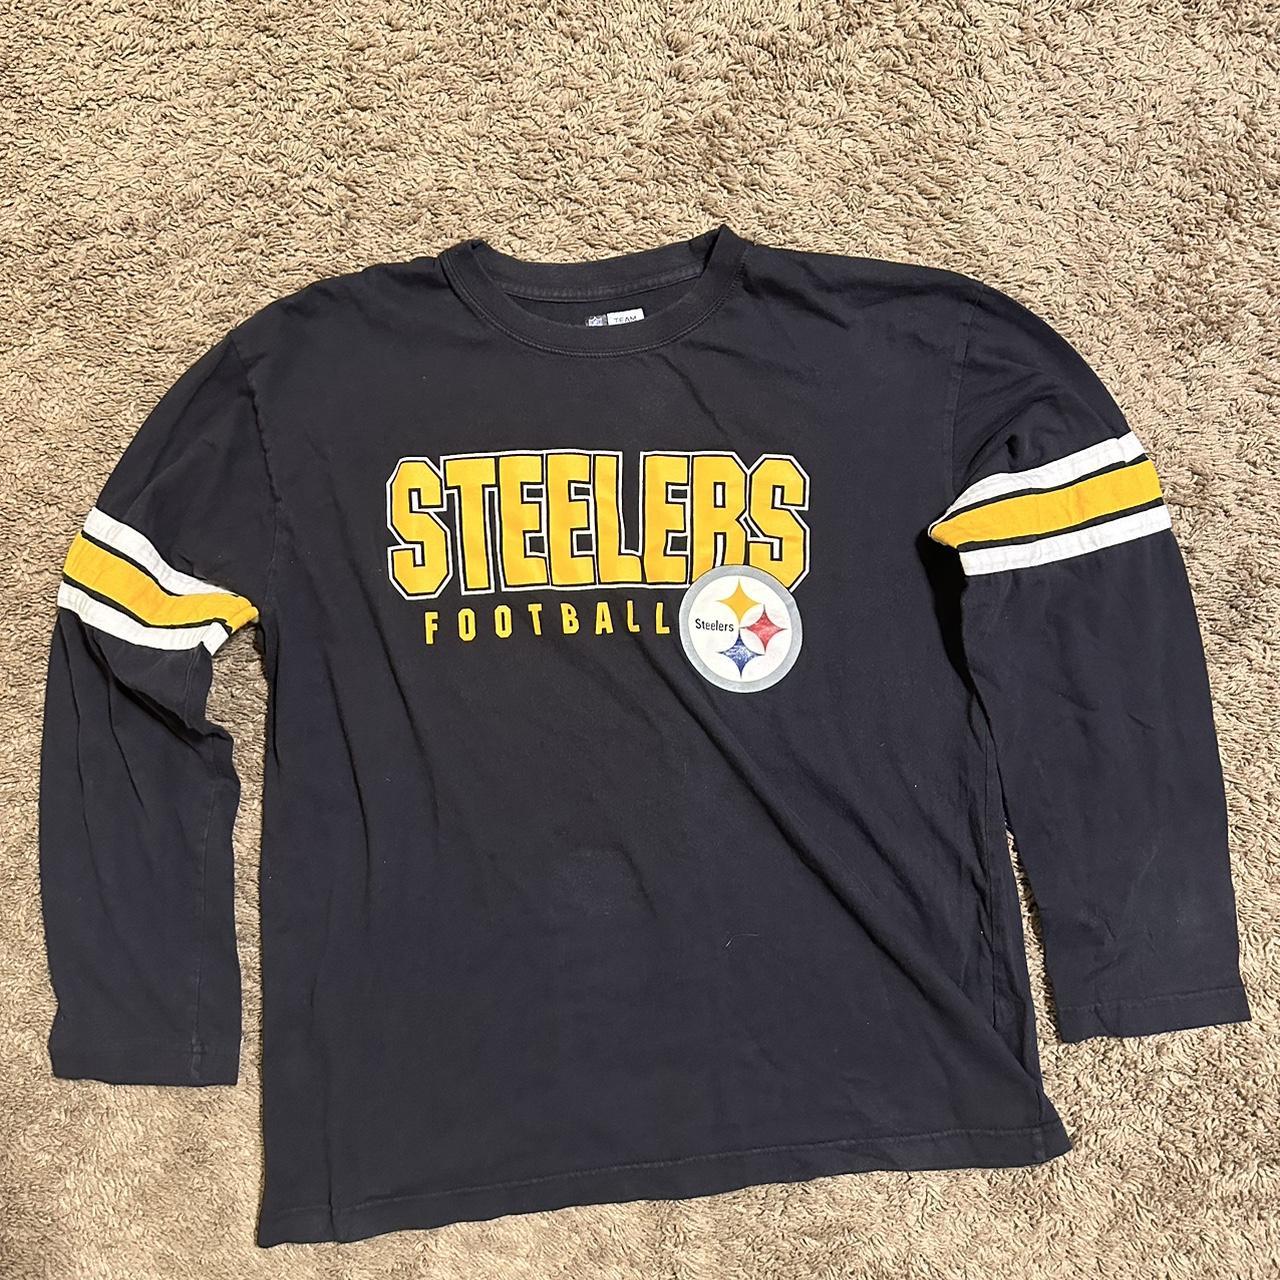 Vintage NFL Pittsburgh Steelers “6 rings” shirt 00s... - Depop